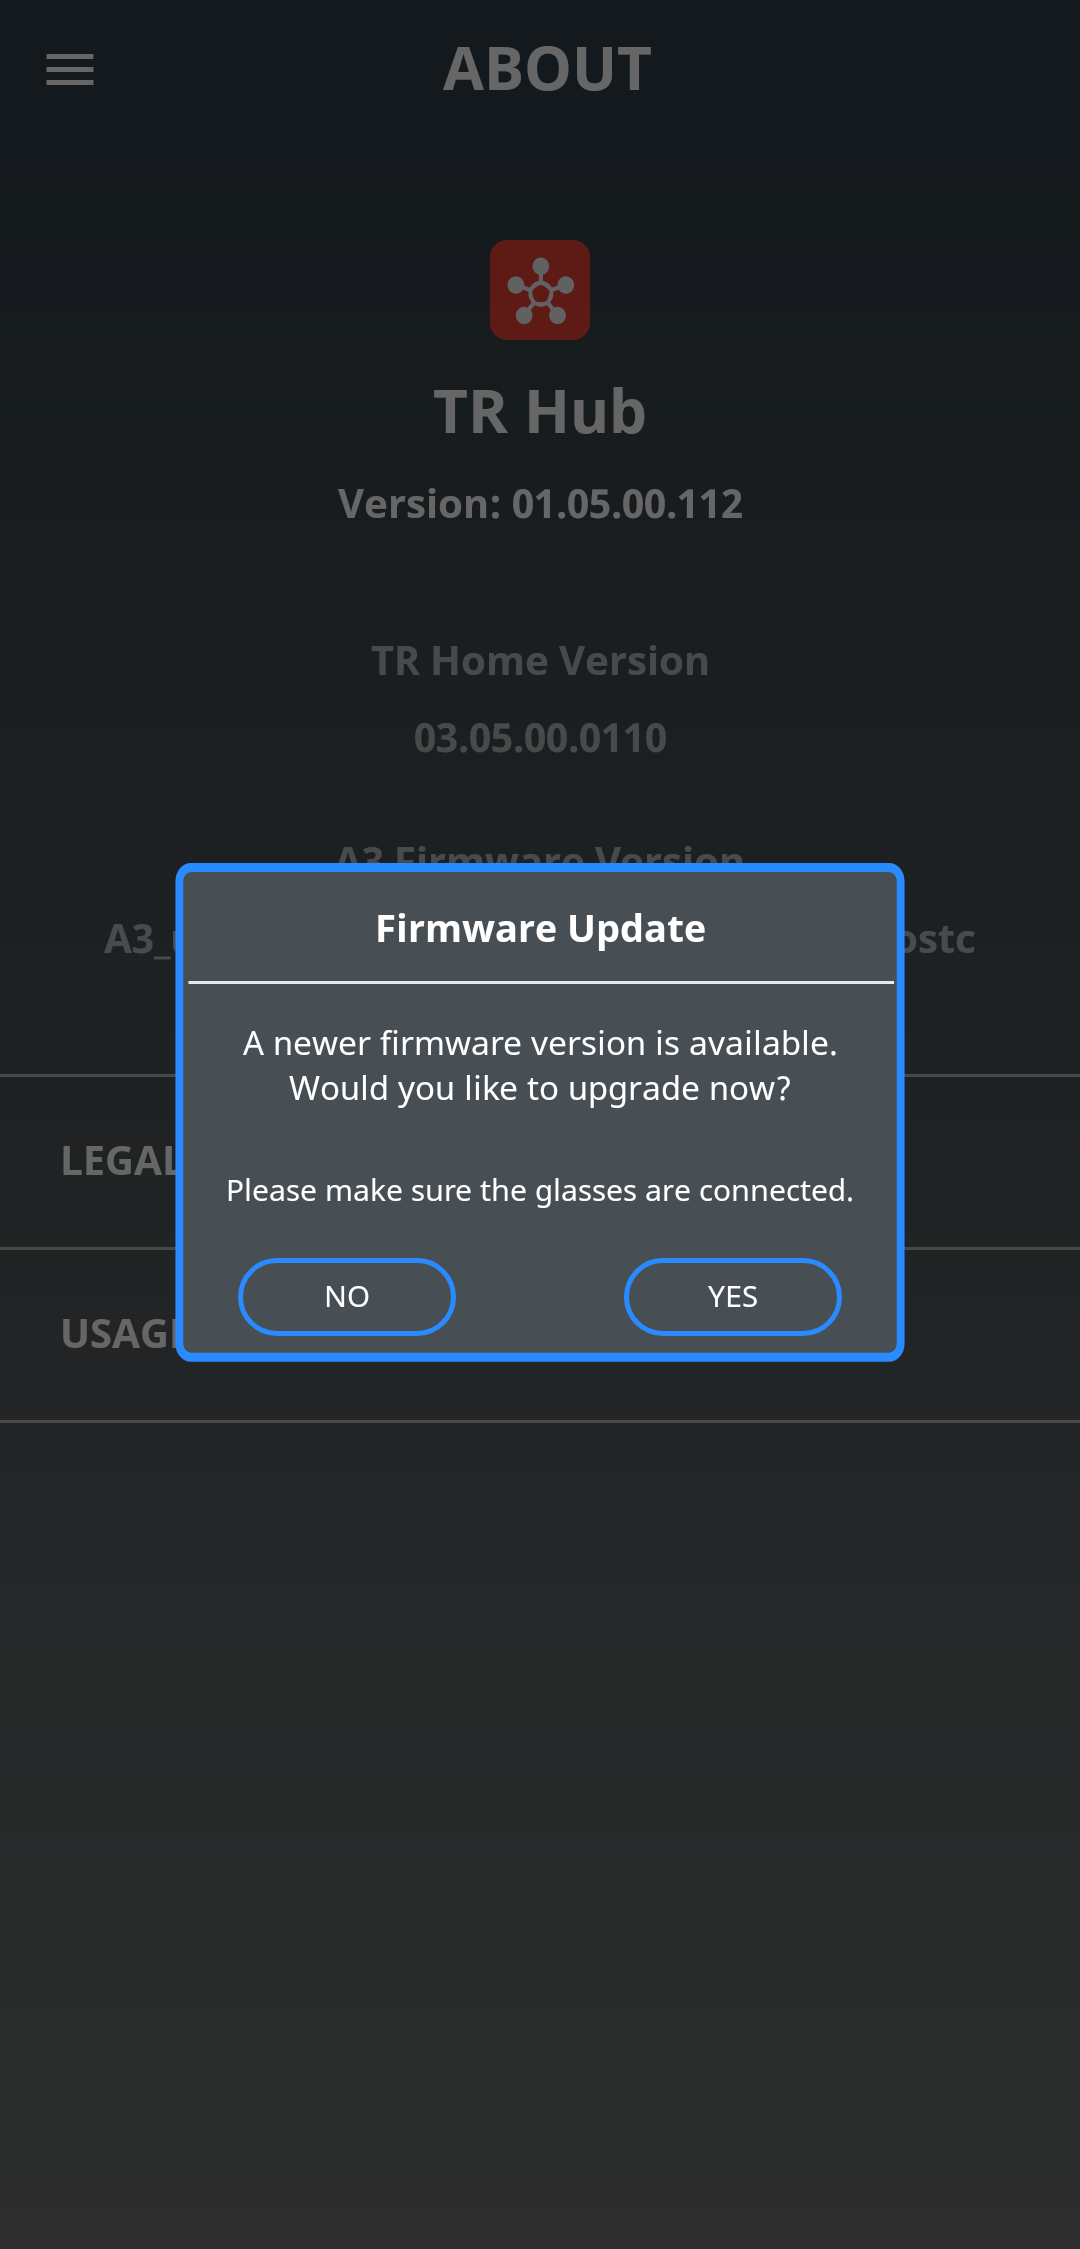 A3 firmware update prompt in TR Hub